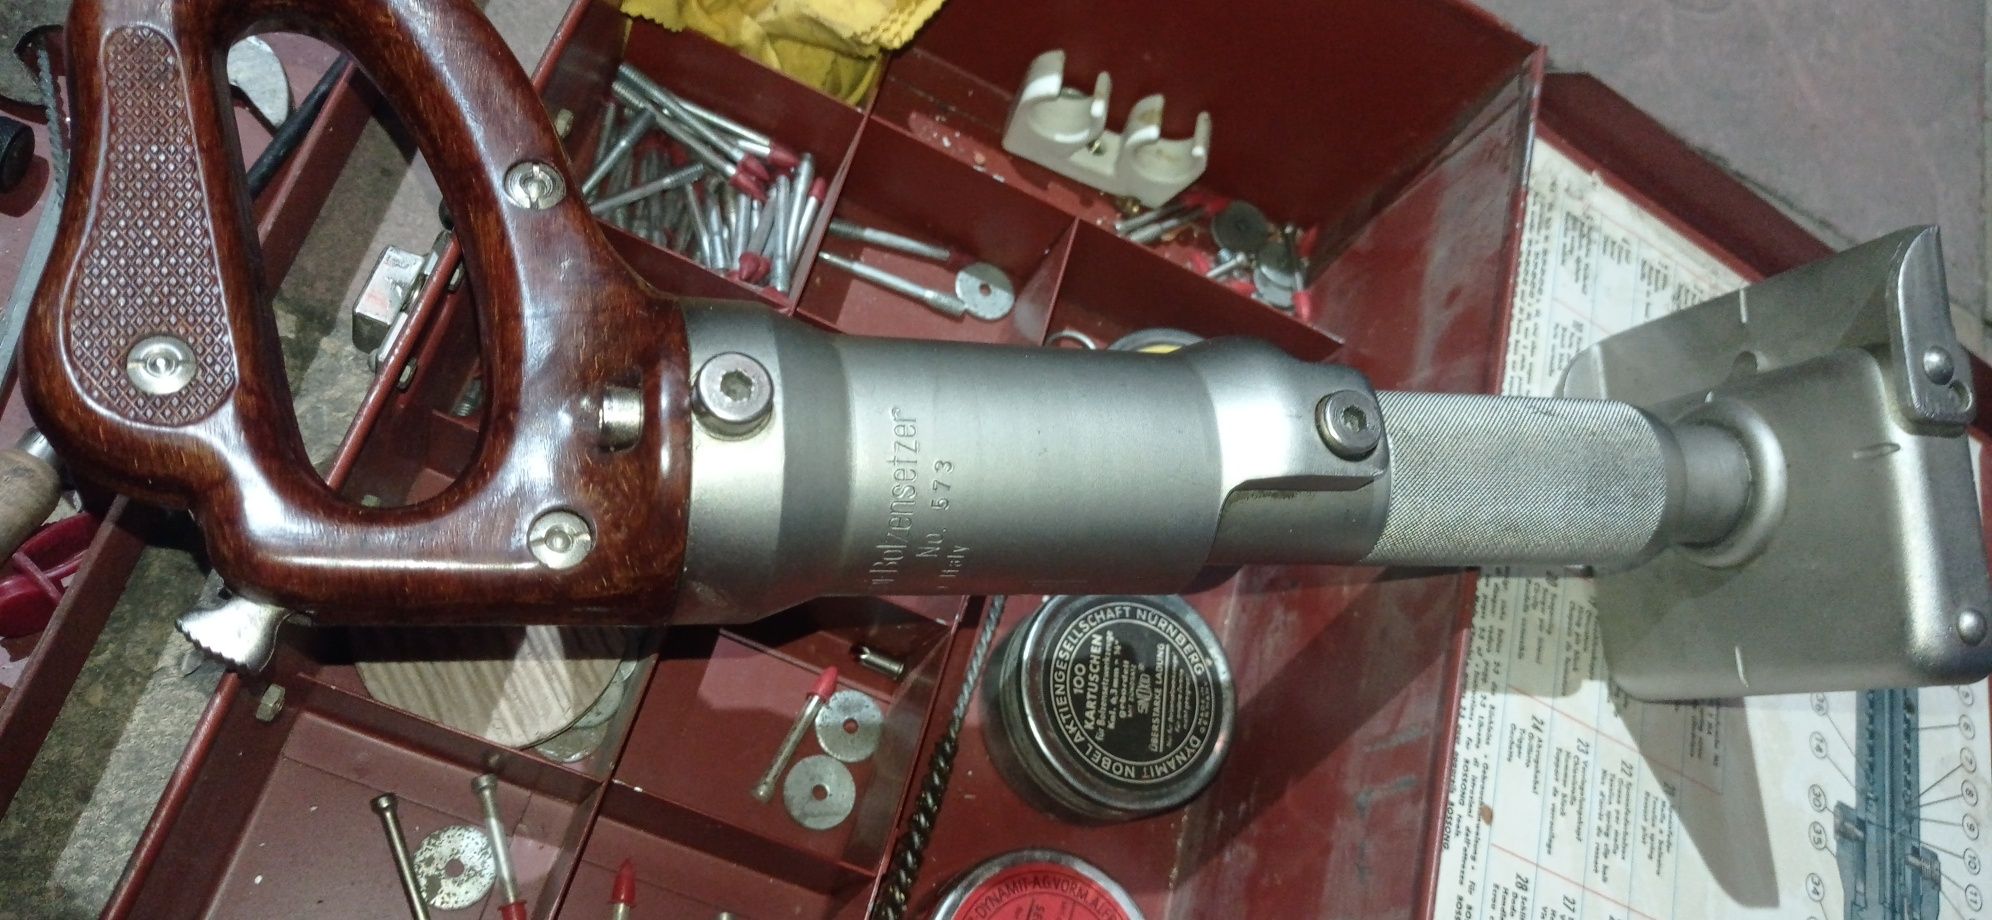 Pistol cu capse pirotehnice pentru bătut cuie in beton sau fier